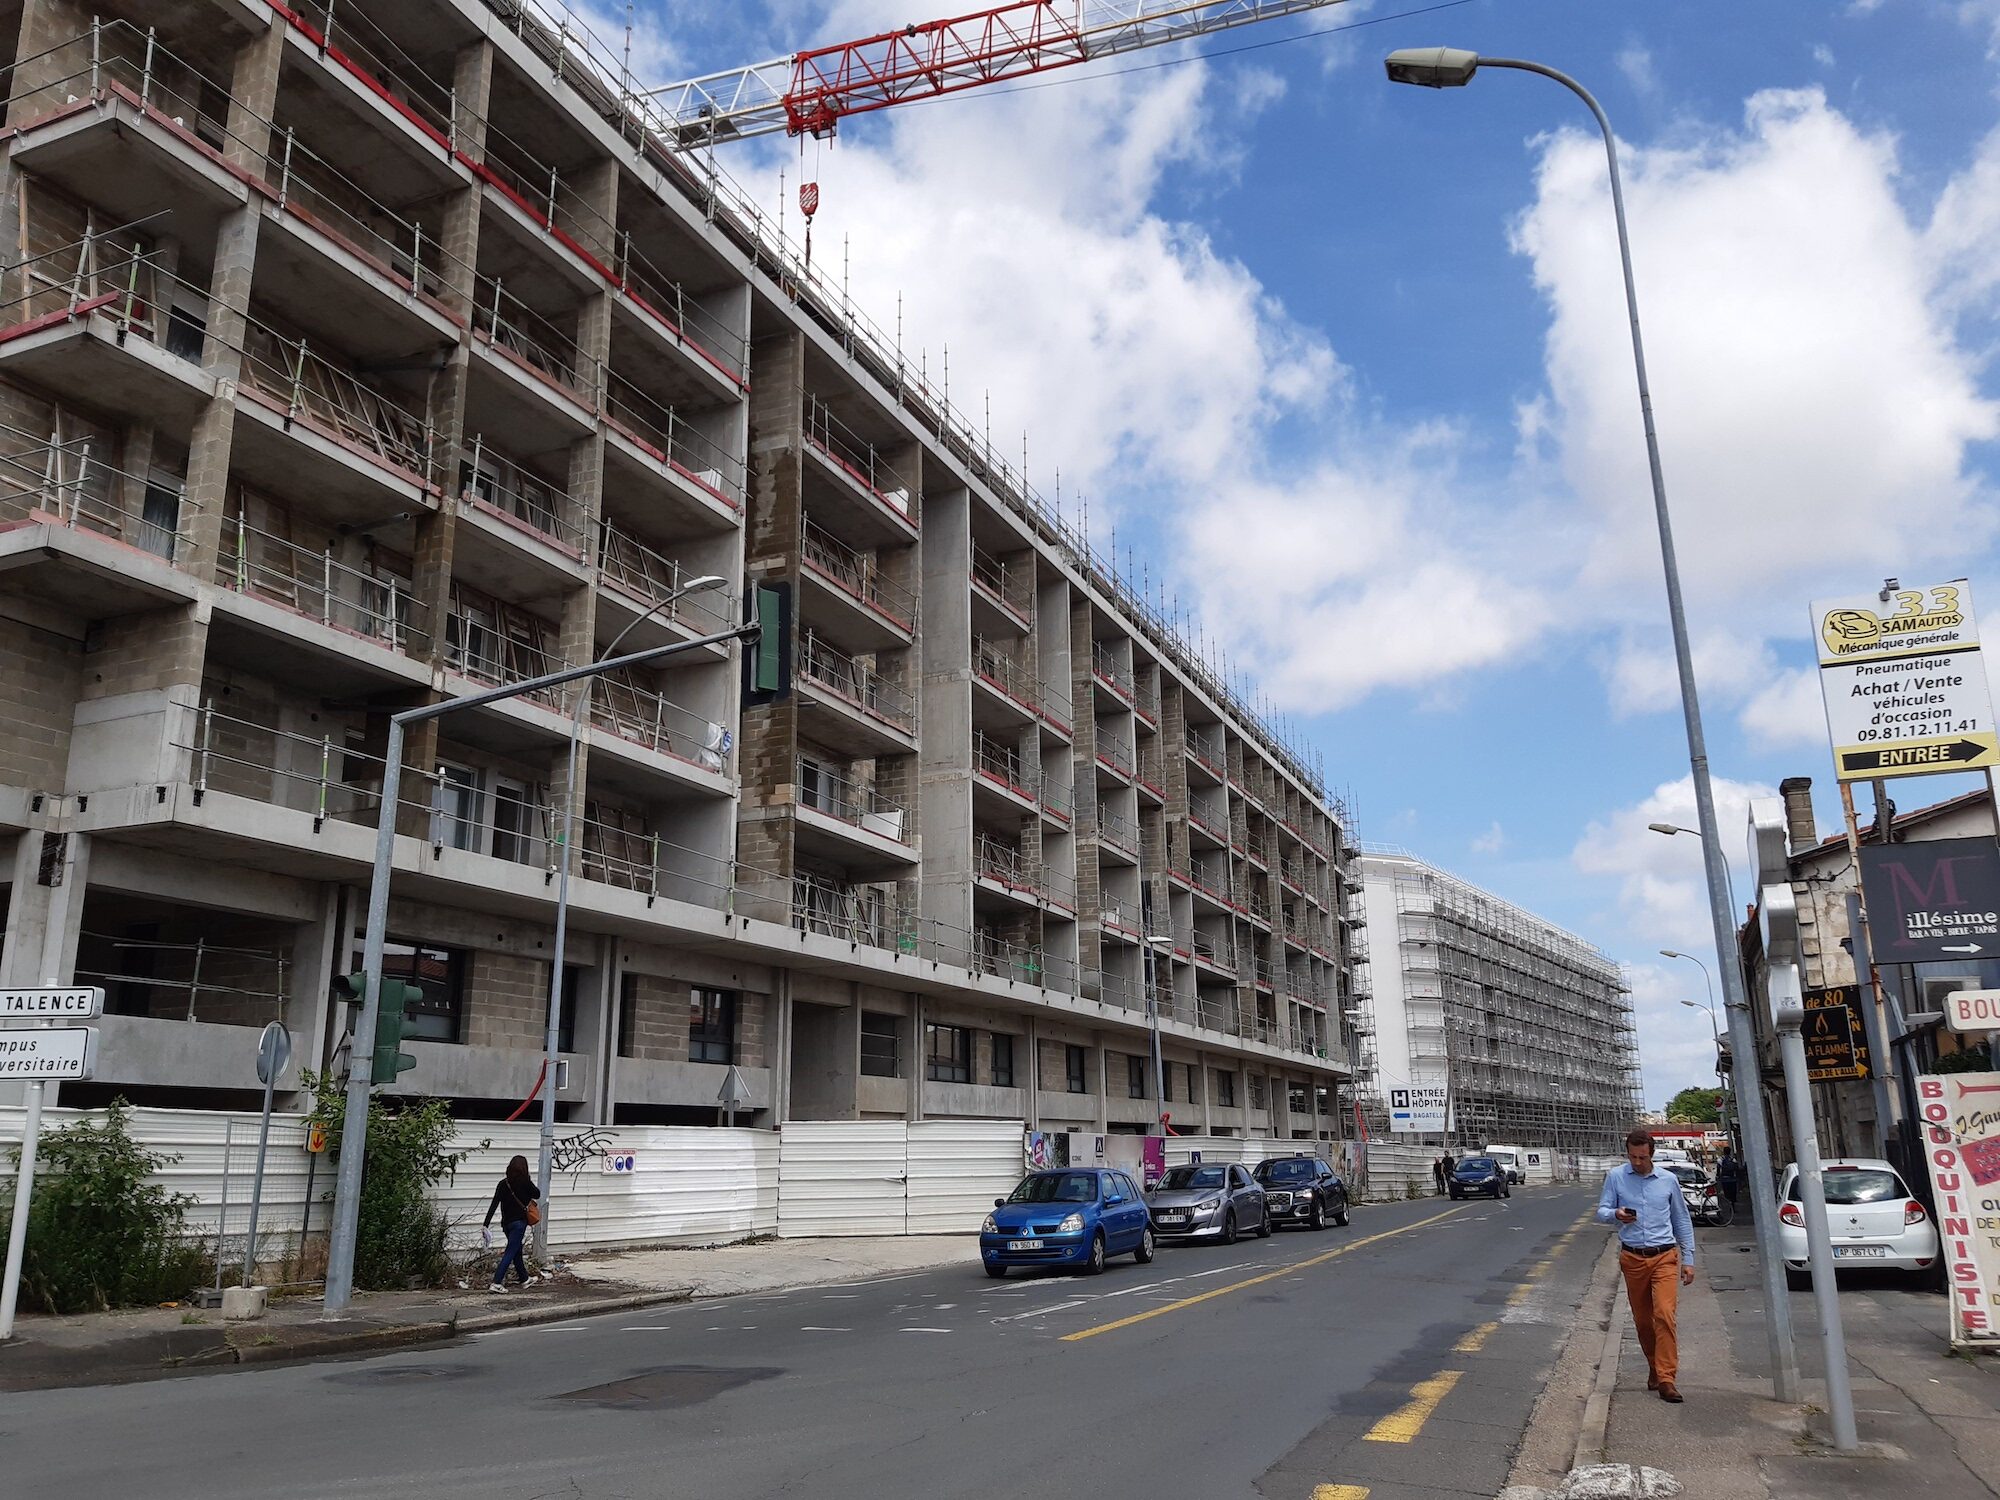 La plus grave crise immobilière depuis 30 ans  ébranle toute la filière du logement en Gironde